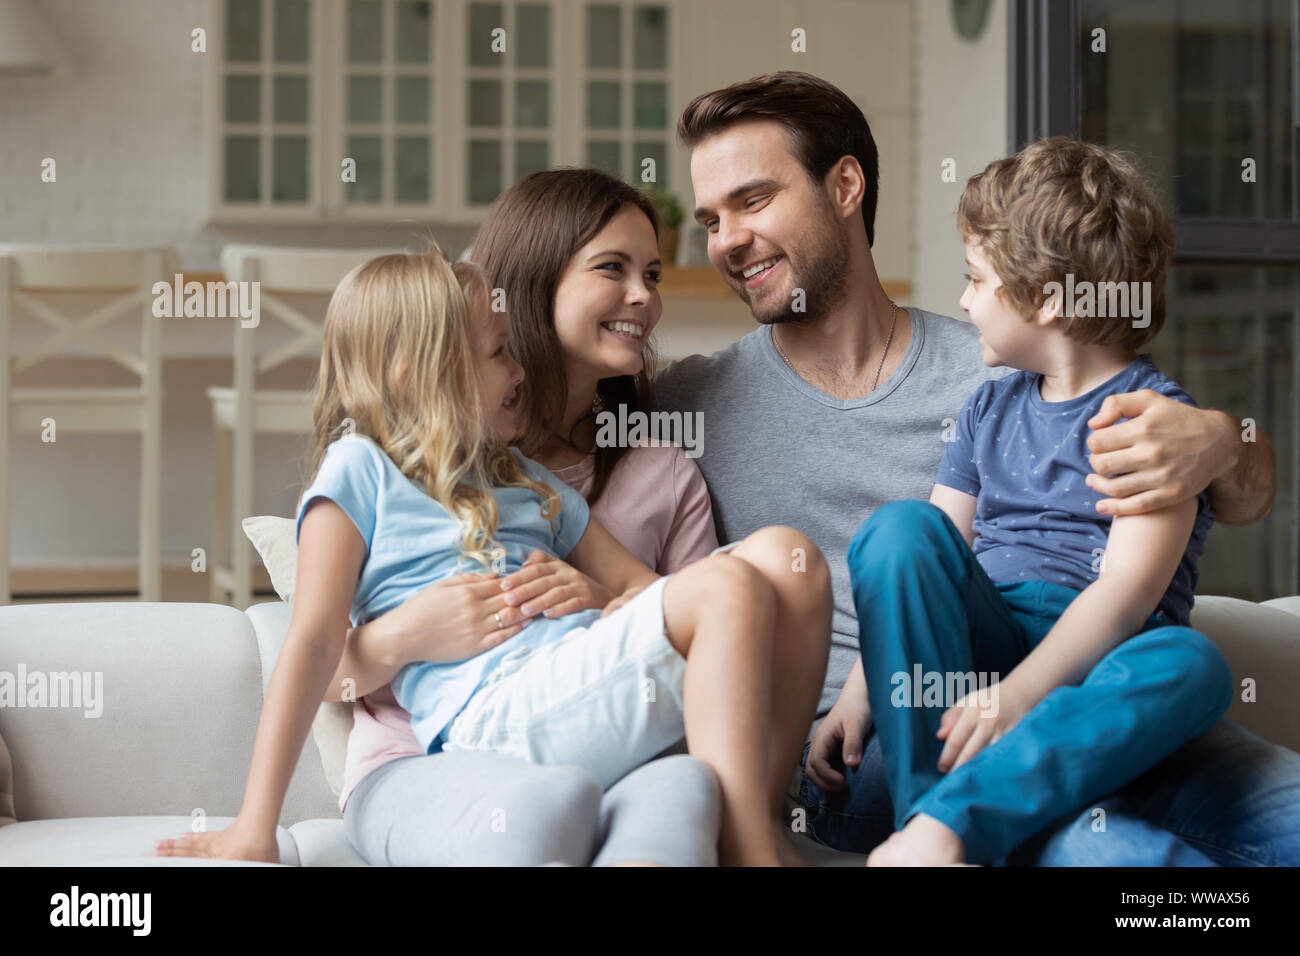 Glückliche junge Familie Paar halten in runde kleine niedliche Kinder. Stockfoto